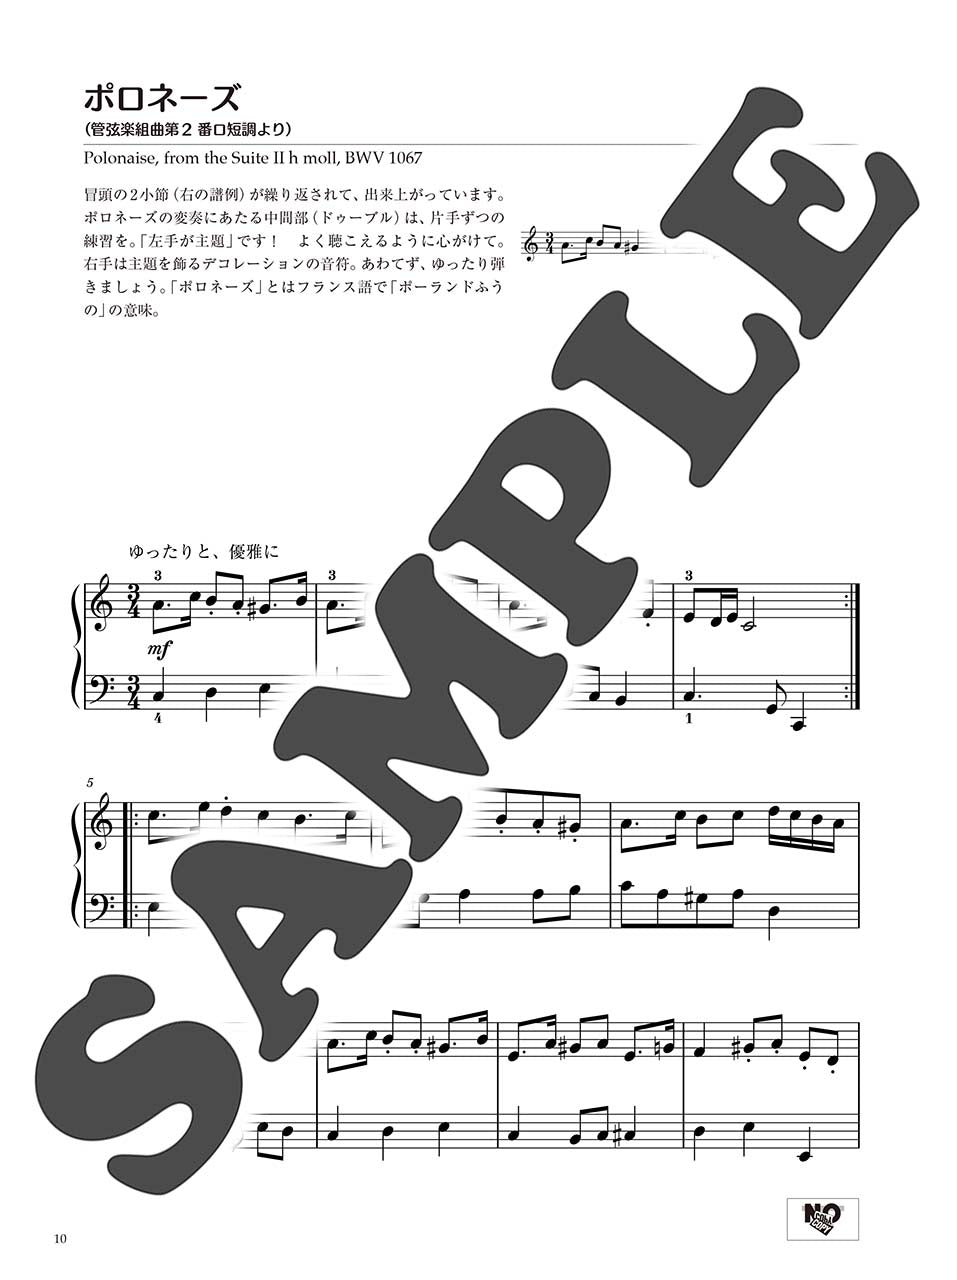 ピアノソロ 初中級 バッハの名曲を弾きたい! 管弦楽曲からカンタータまで… 編曲:塚谷水無子_3